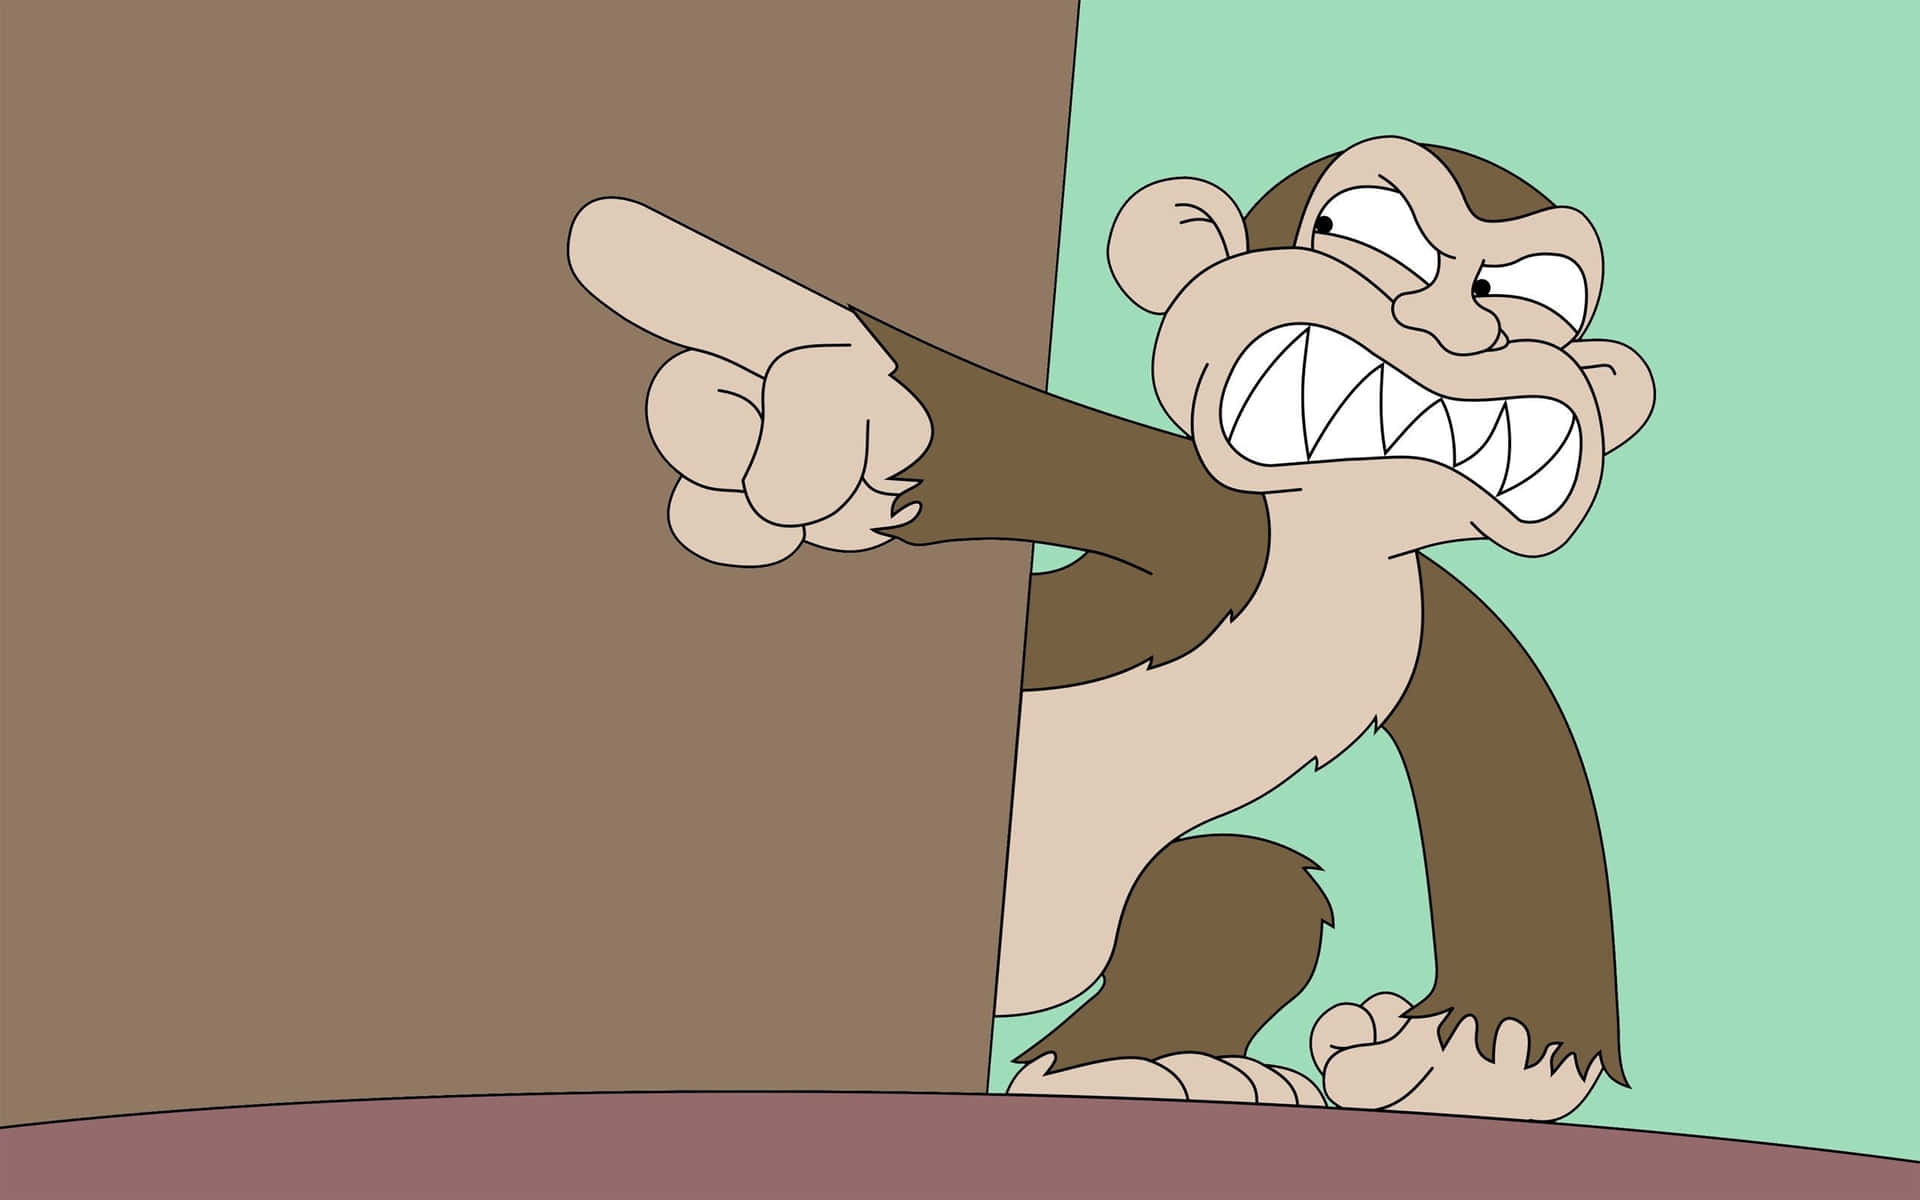 •  Don't monkey around!